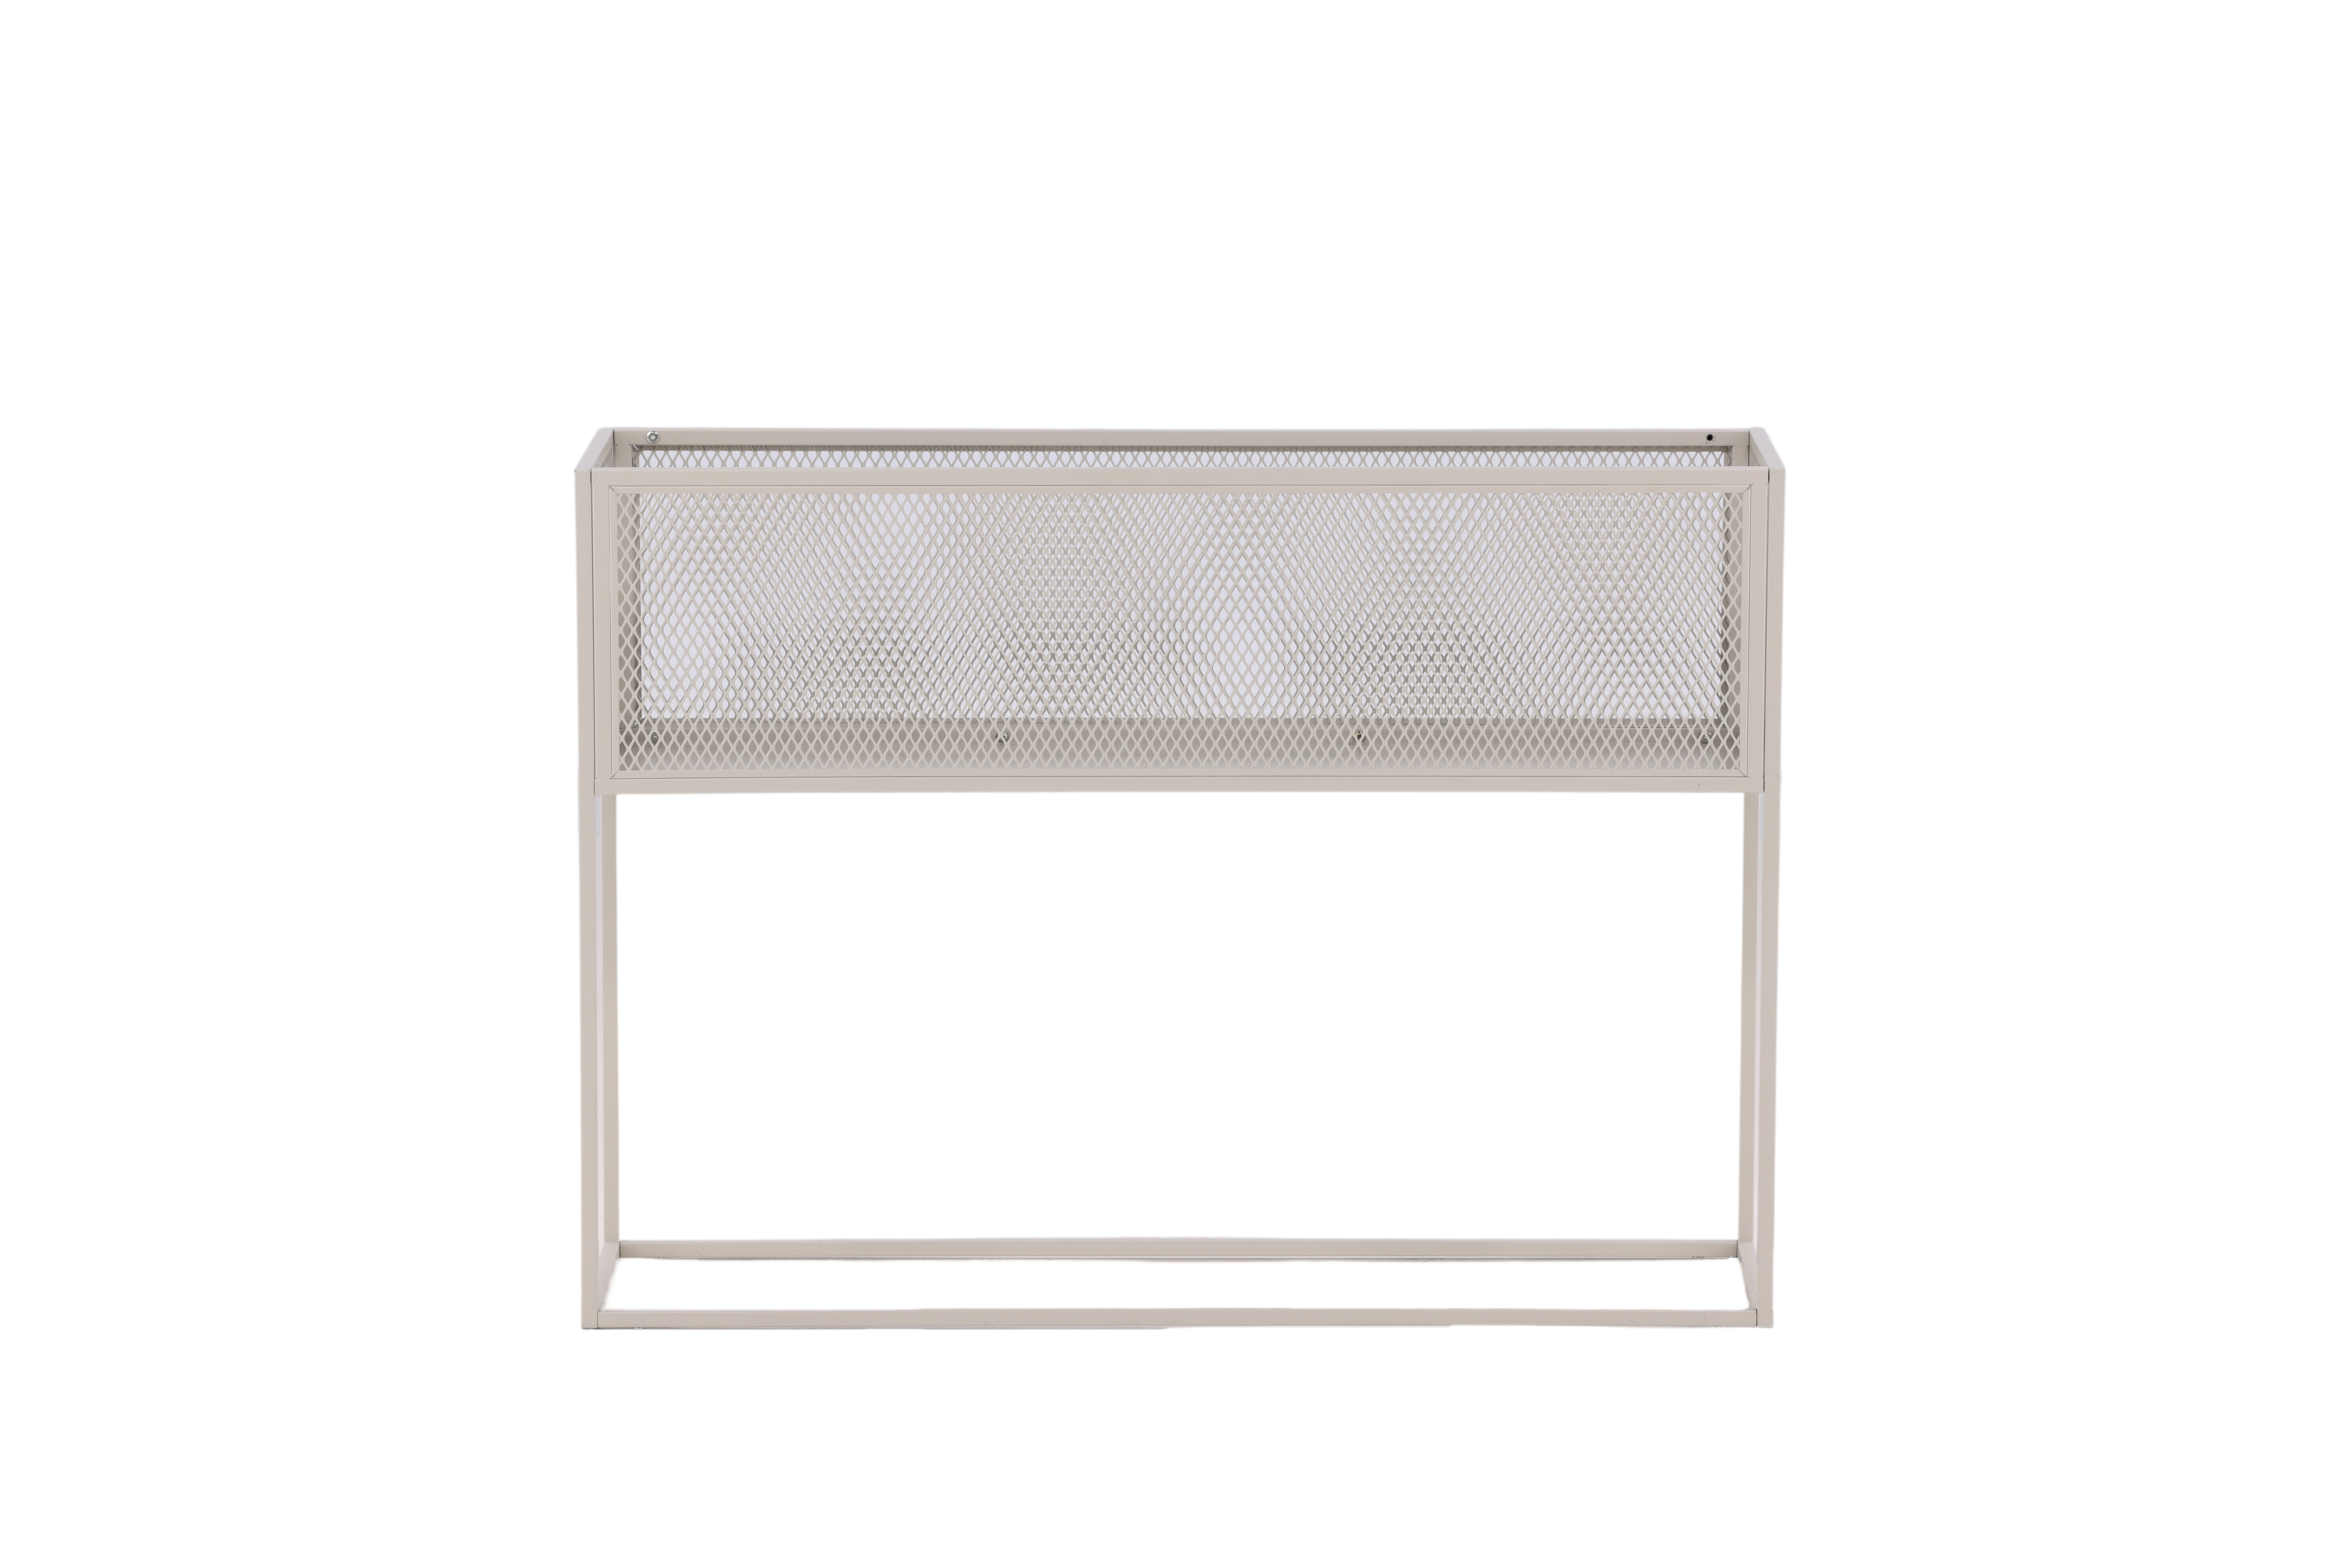 VENTURE DESIGN Netz sidebord, rektangulær - beige stål (110x30)